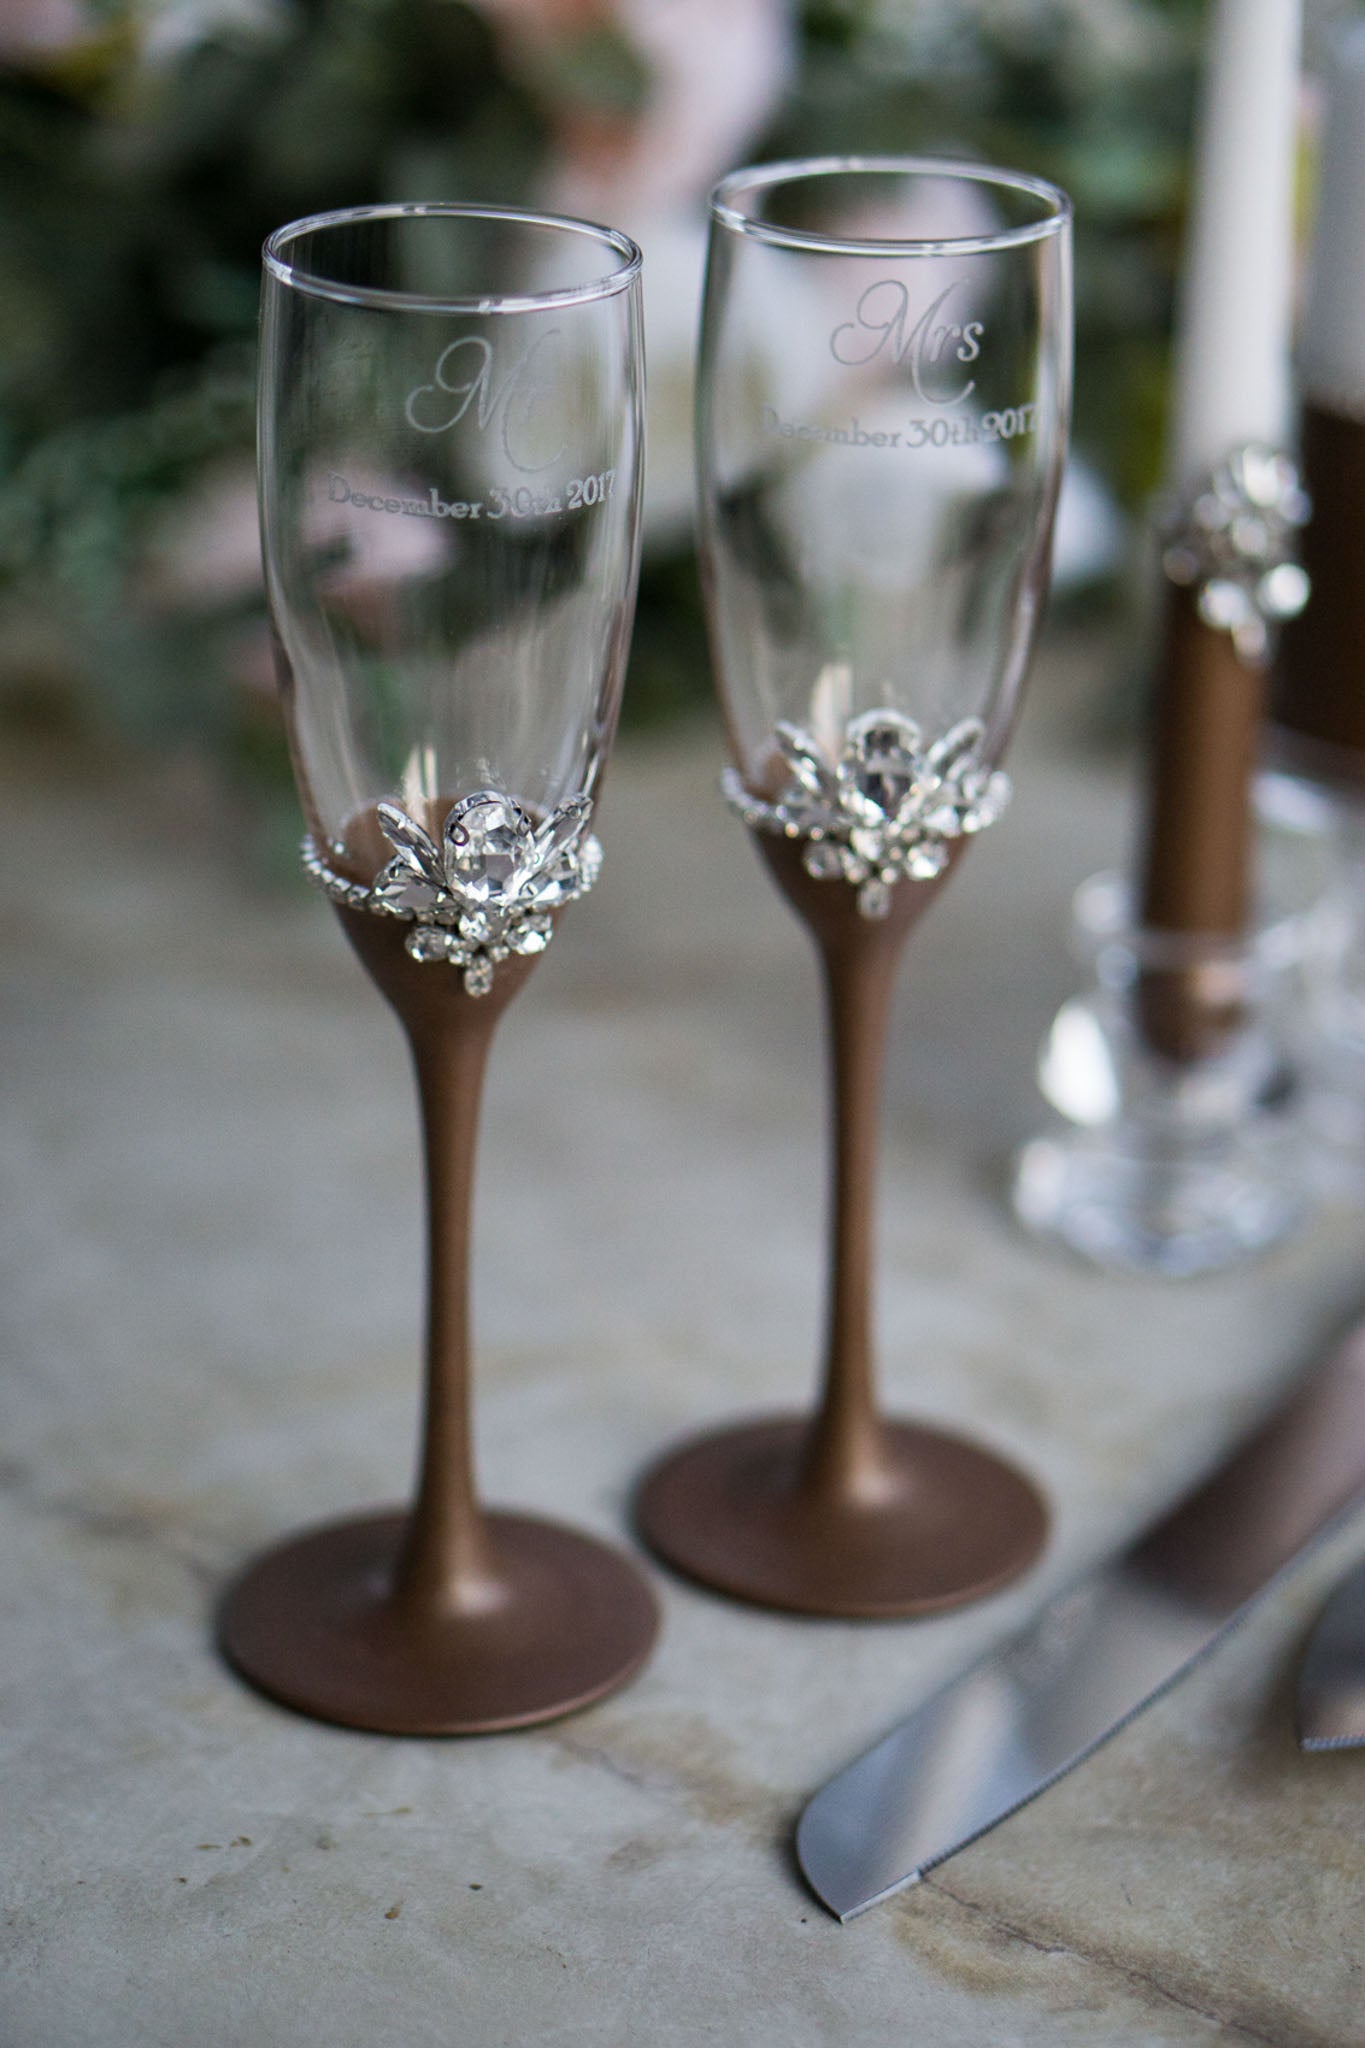 Personalized Chocolate Amanda Candle Set for Romantic Wedding Ambiance